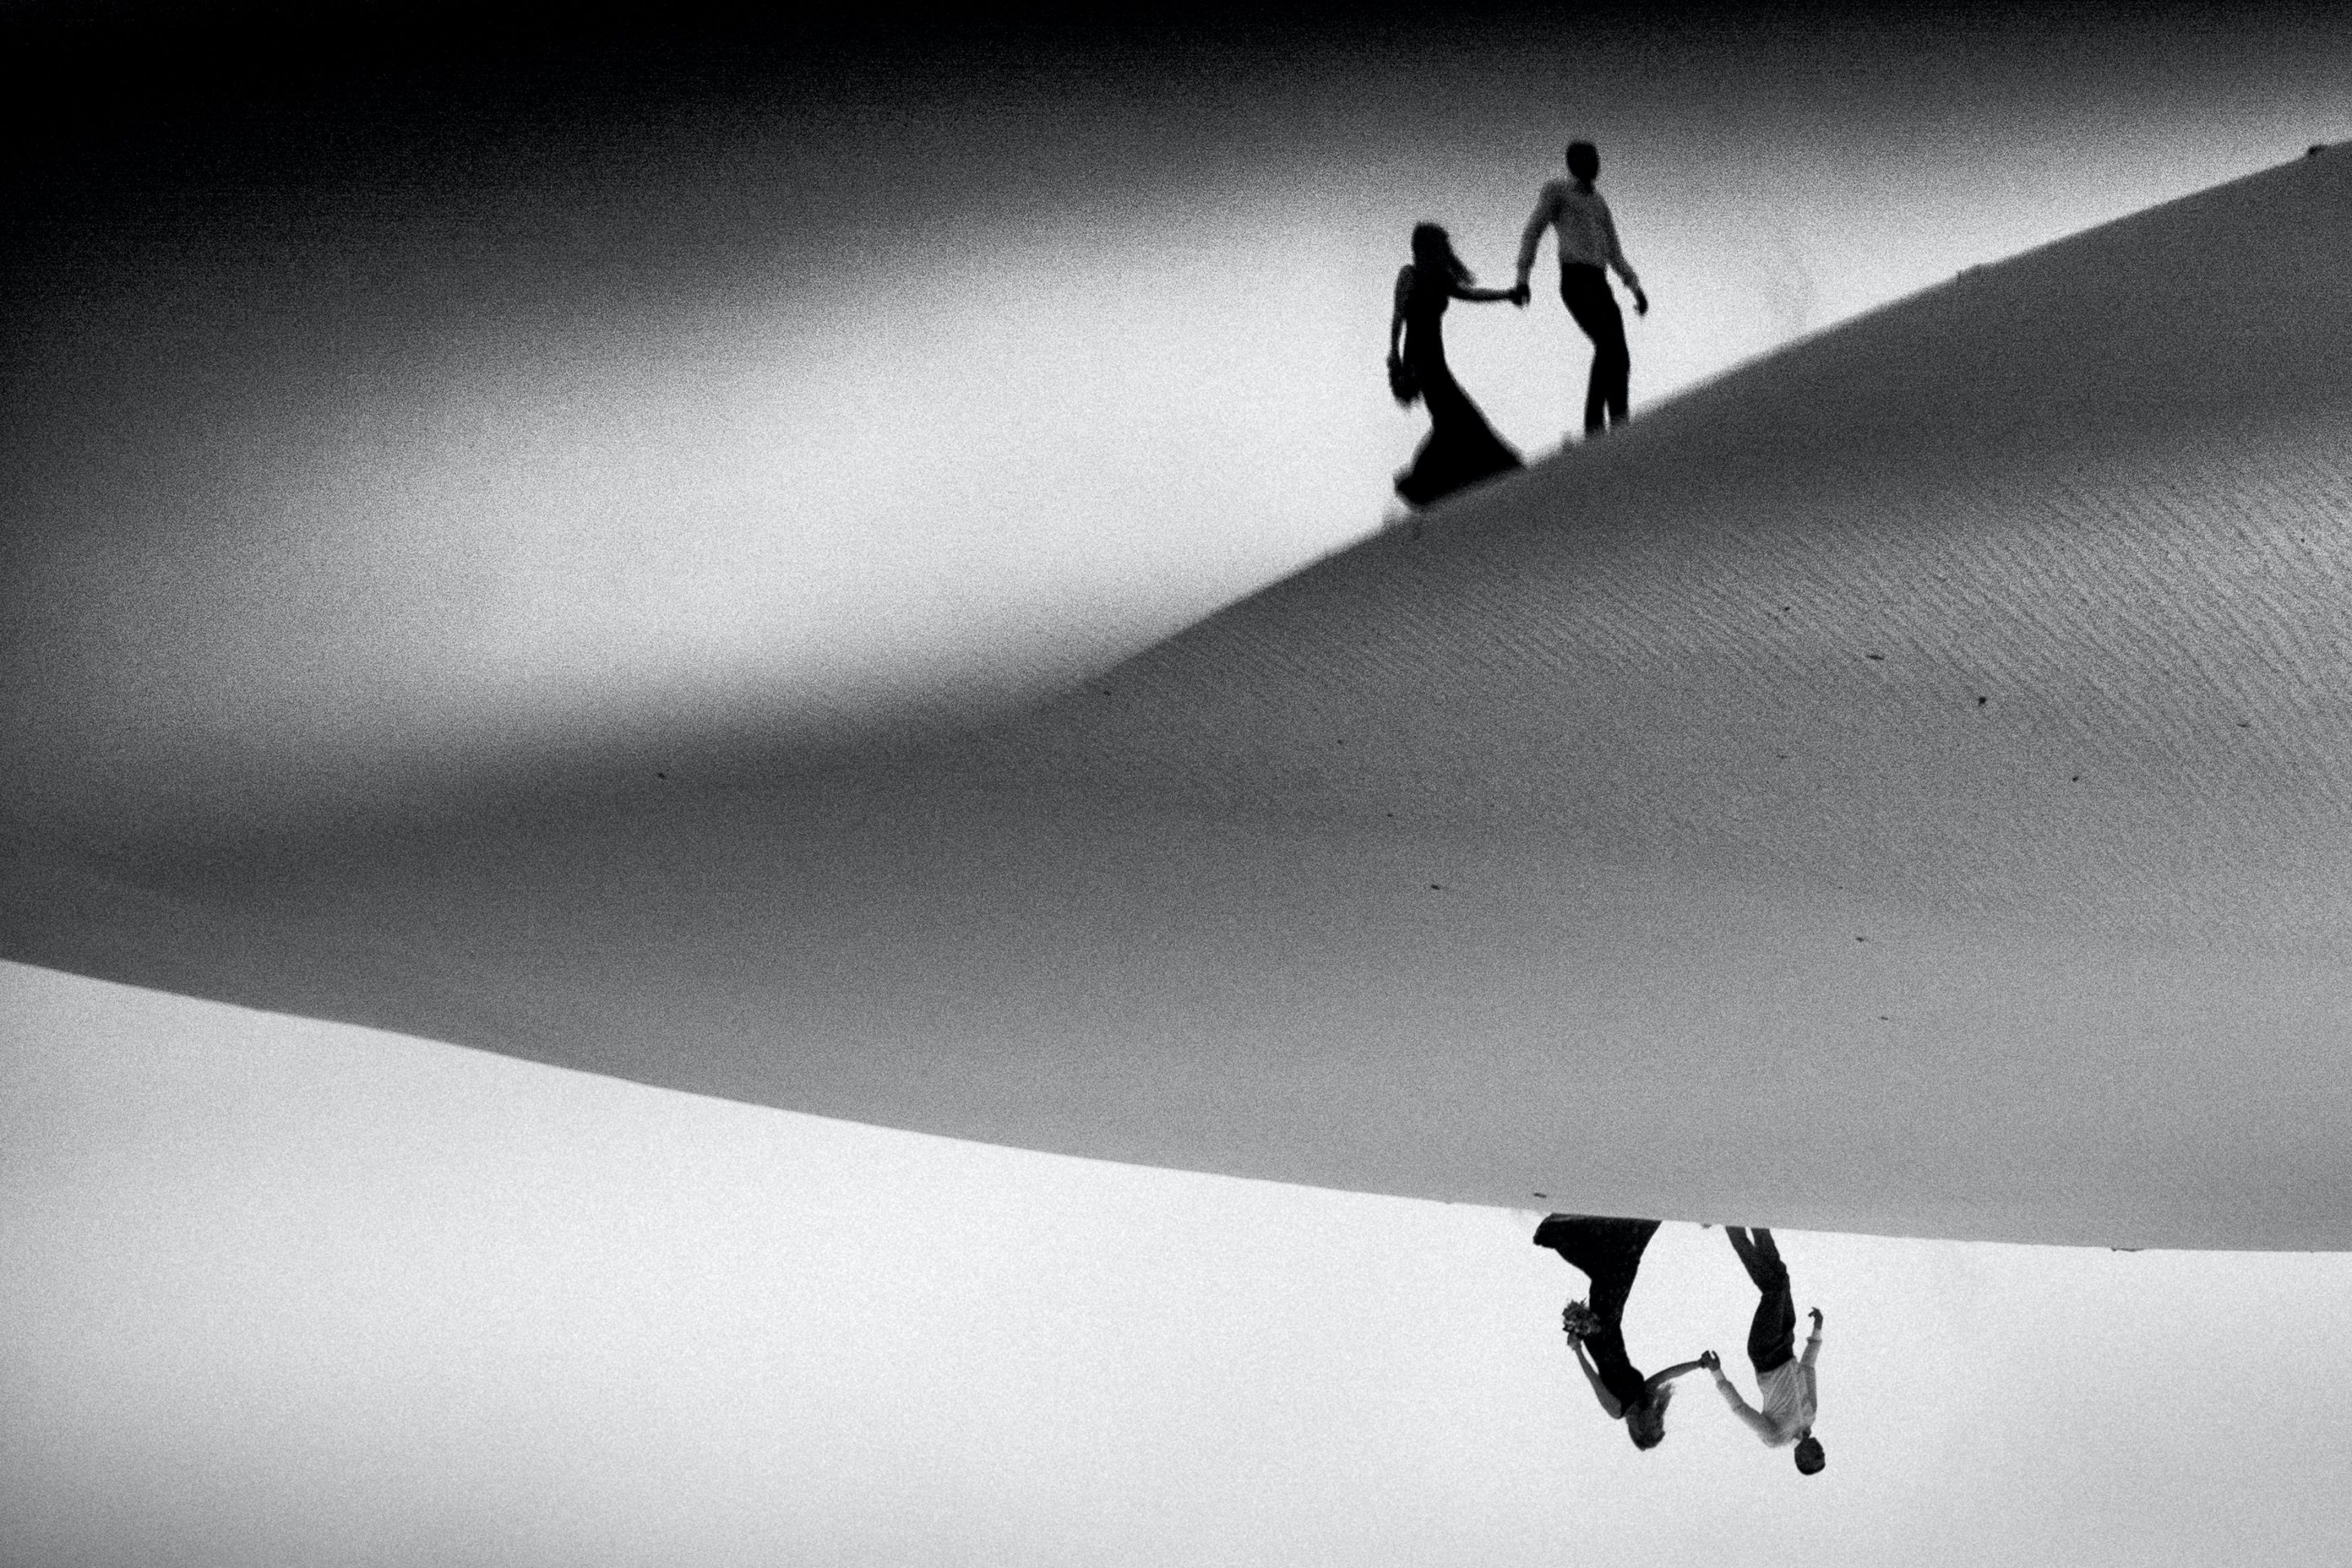 Man leading a woman across a desert sand dune